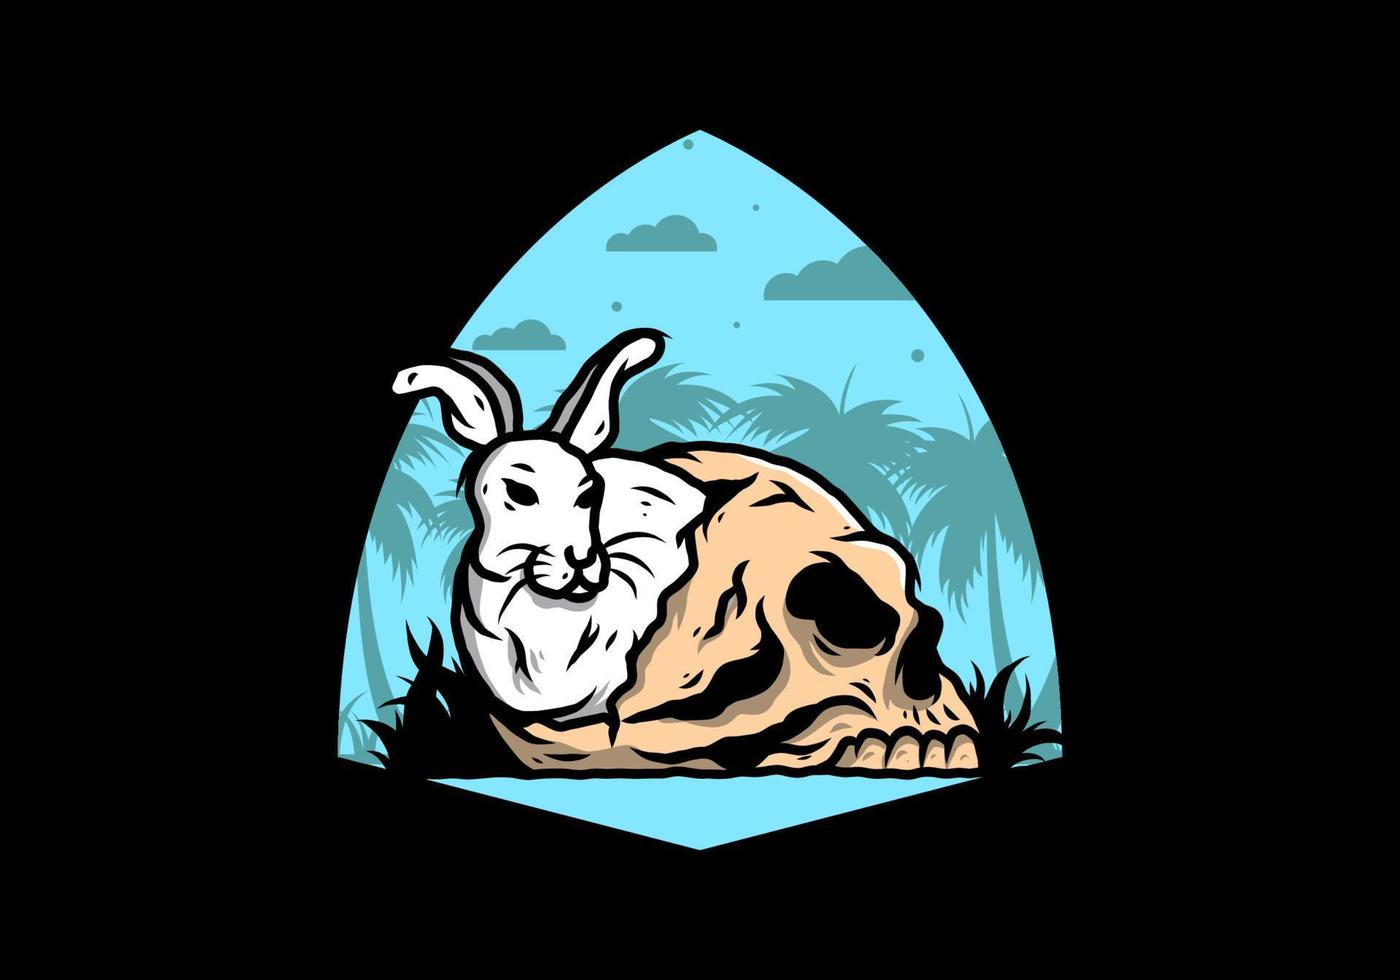 coelho escondido dentro da ilustração do crânio humano vetor